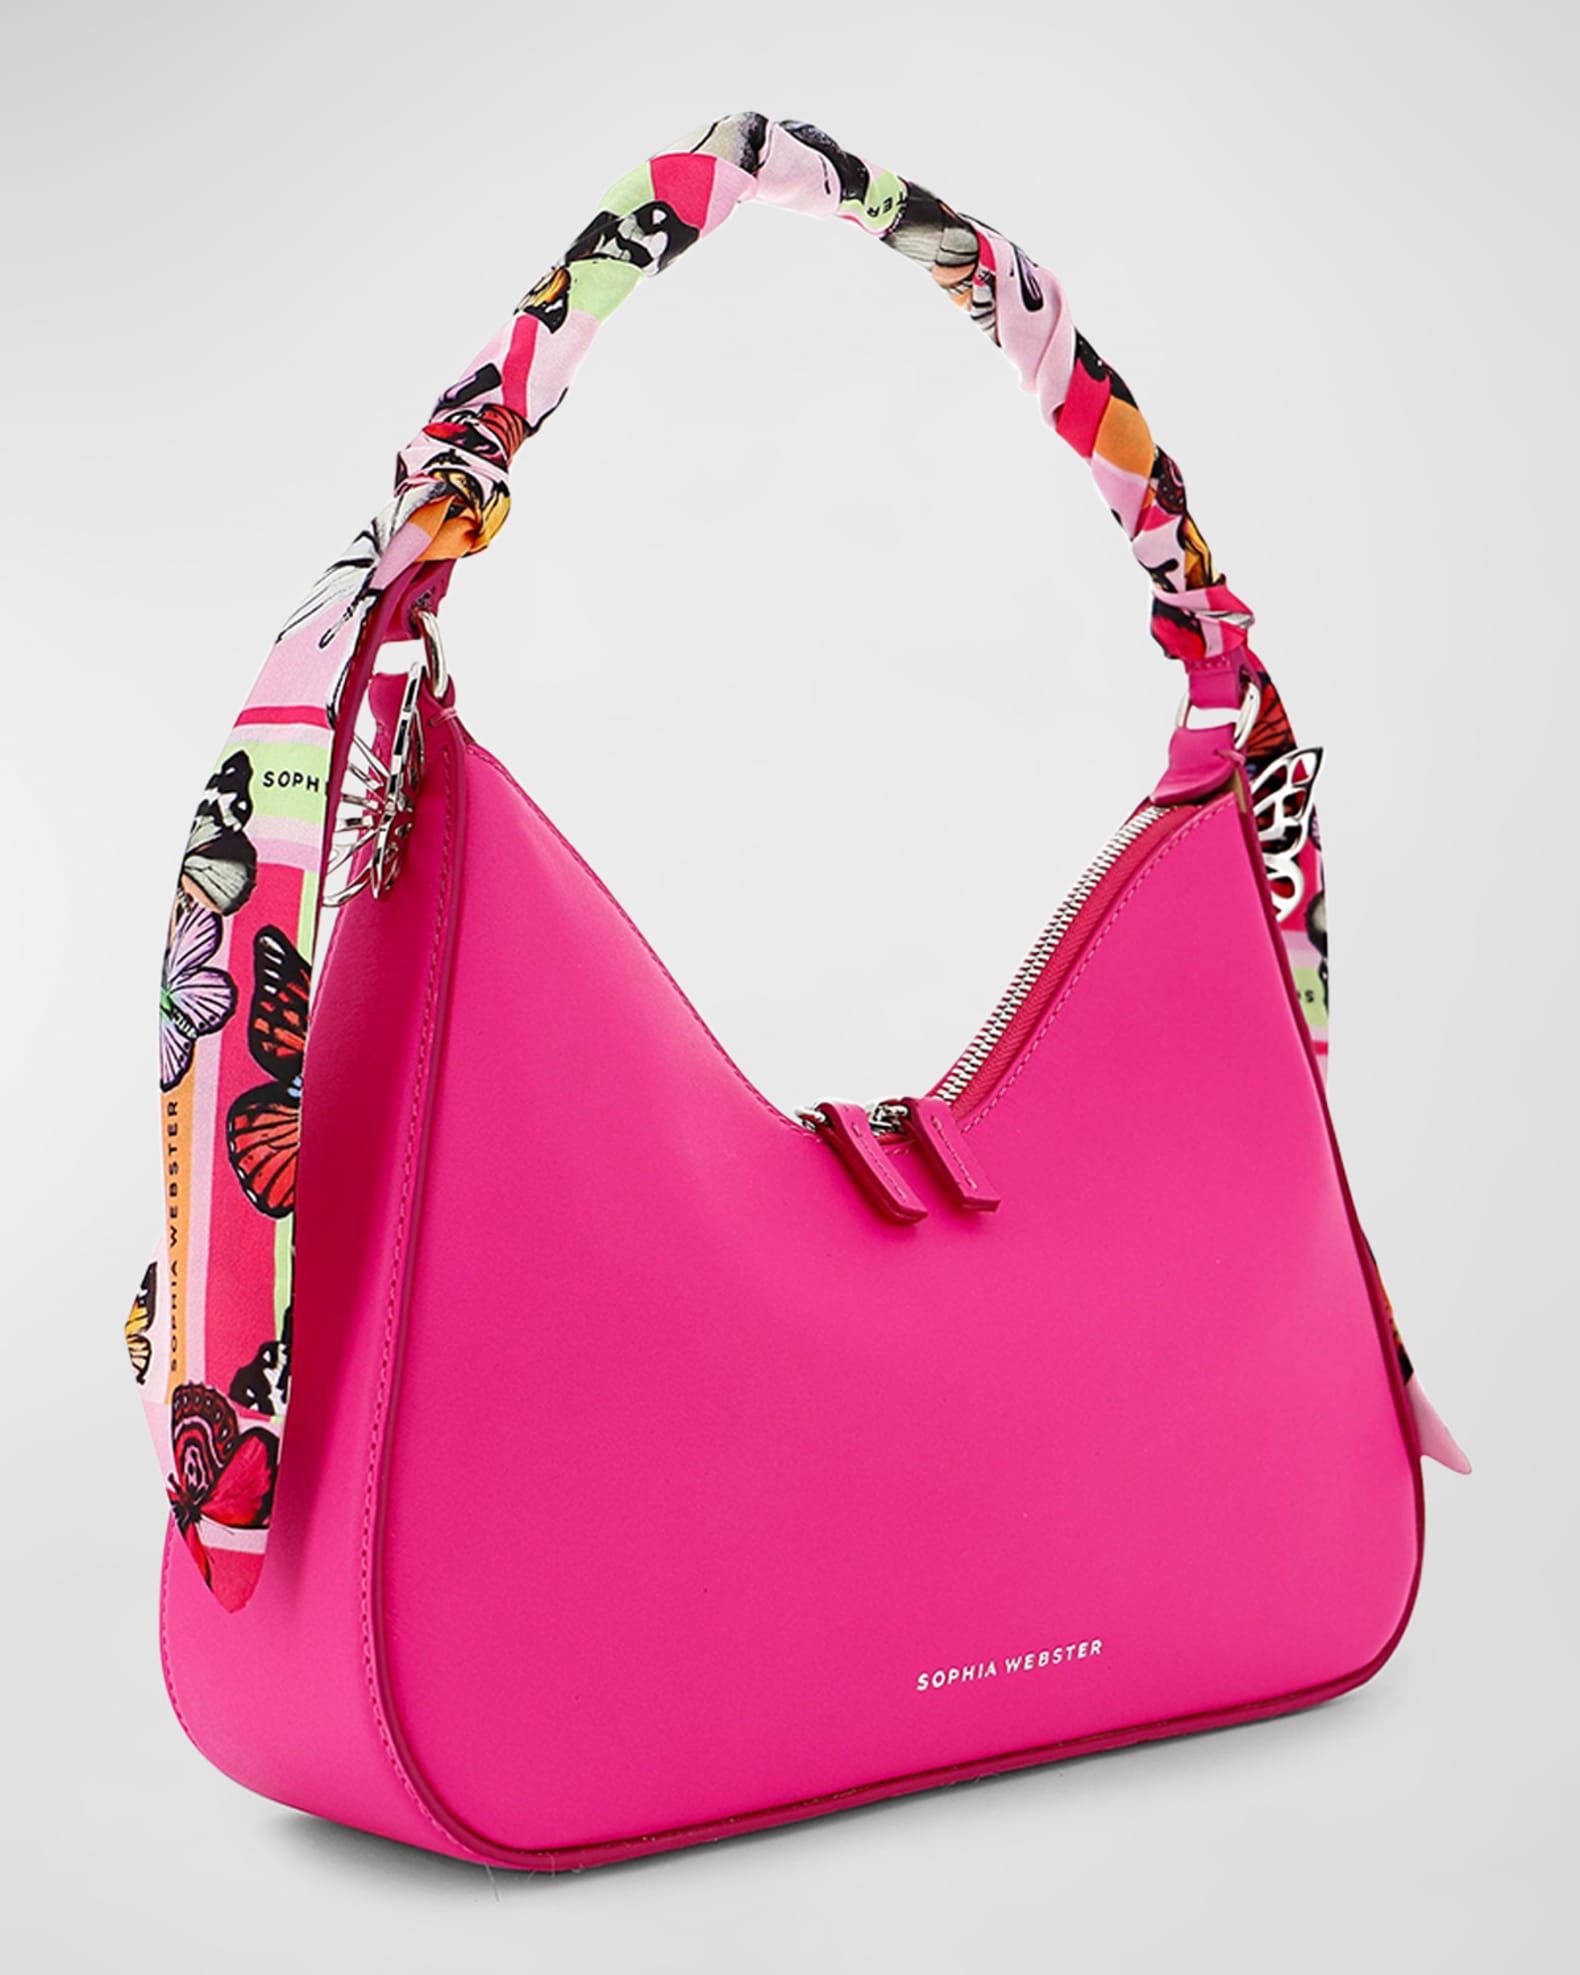 Sophia Webster Mariposa Zip Leather Hobo Bag | Neiman Marcus